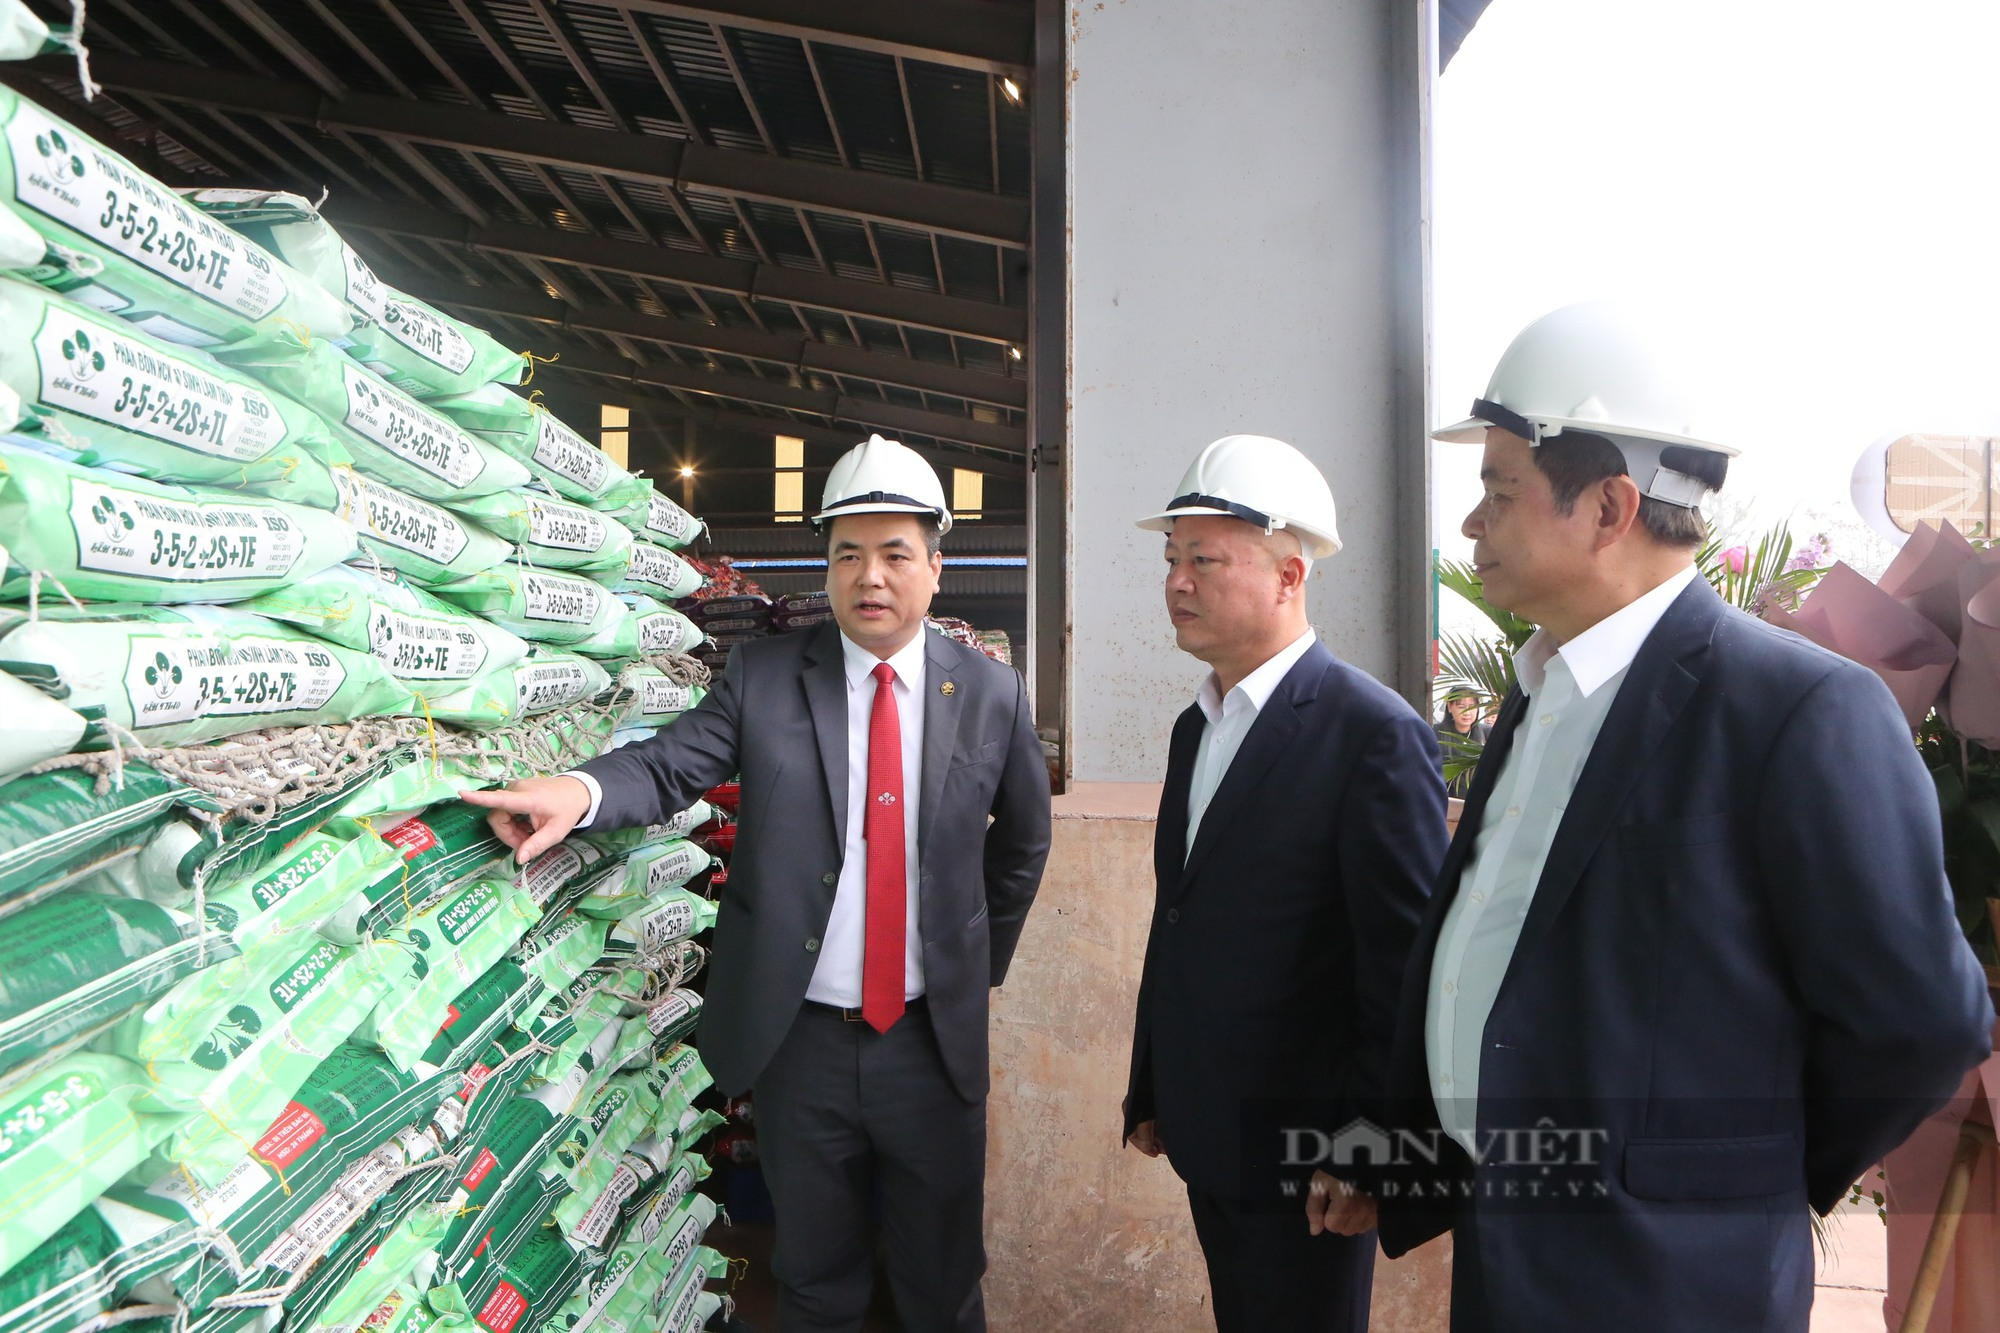 Supe Lâm Thao tung ra thị trường 2 sản phẩm phân bón mới, giúp tăng năng suất, chất lượng nông sản 10 - 20% - Ảnh 3.